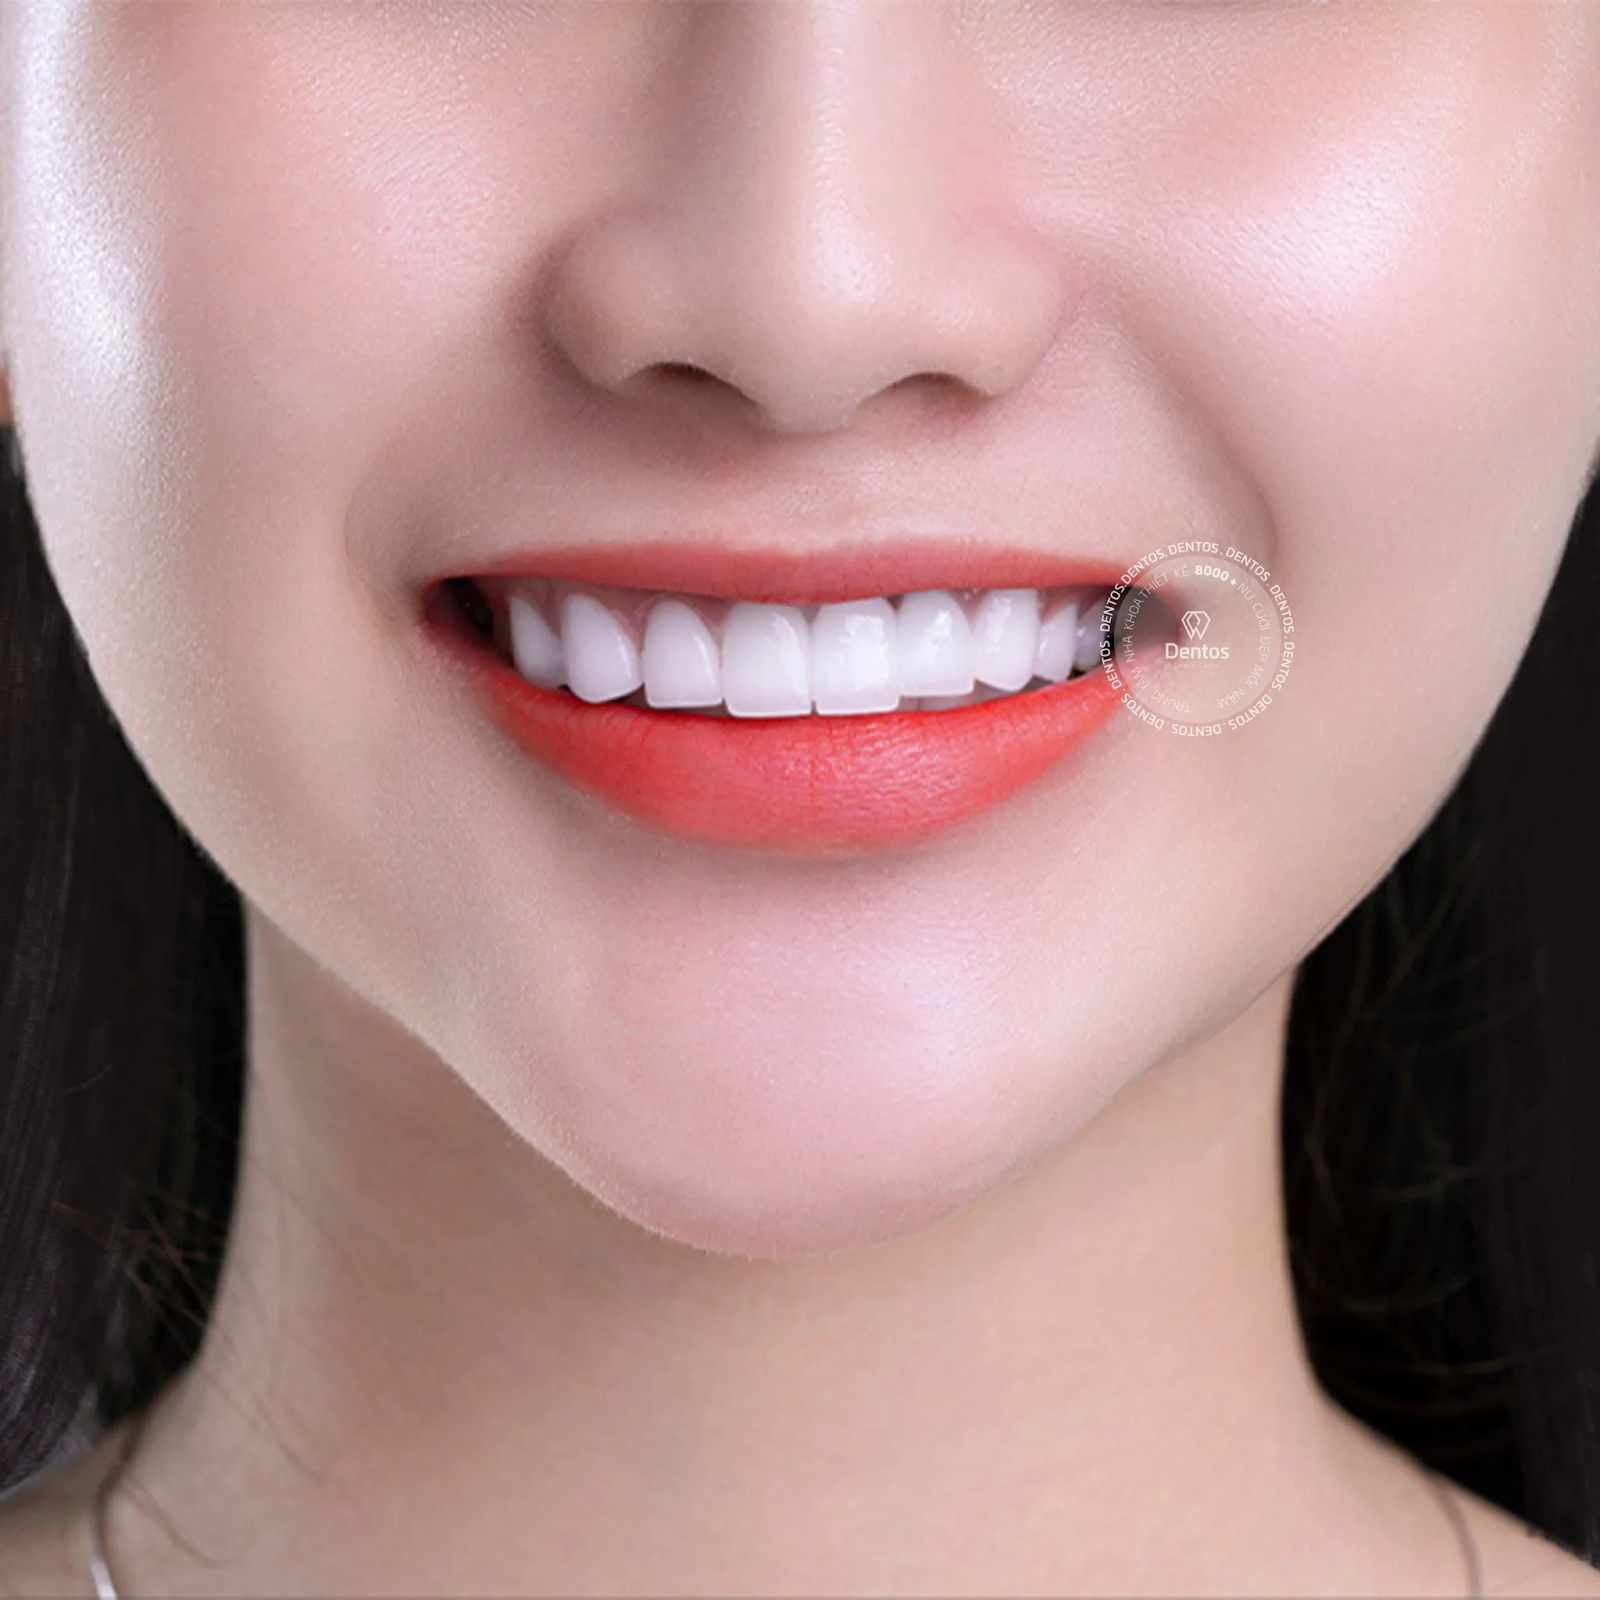 Góc giải đáp: Răng sứ Zirconia có mấy loại? Loại nào thích hợp bọc răng hàm?